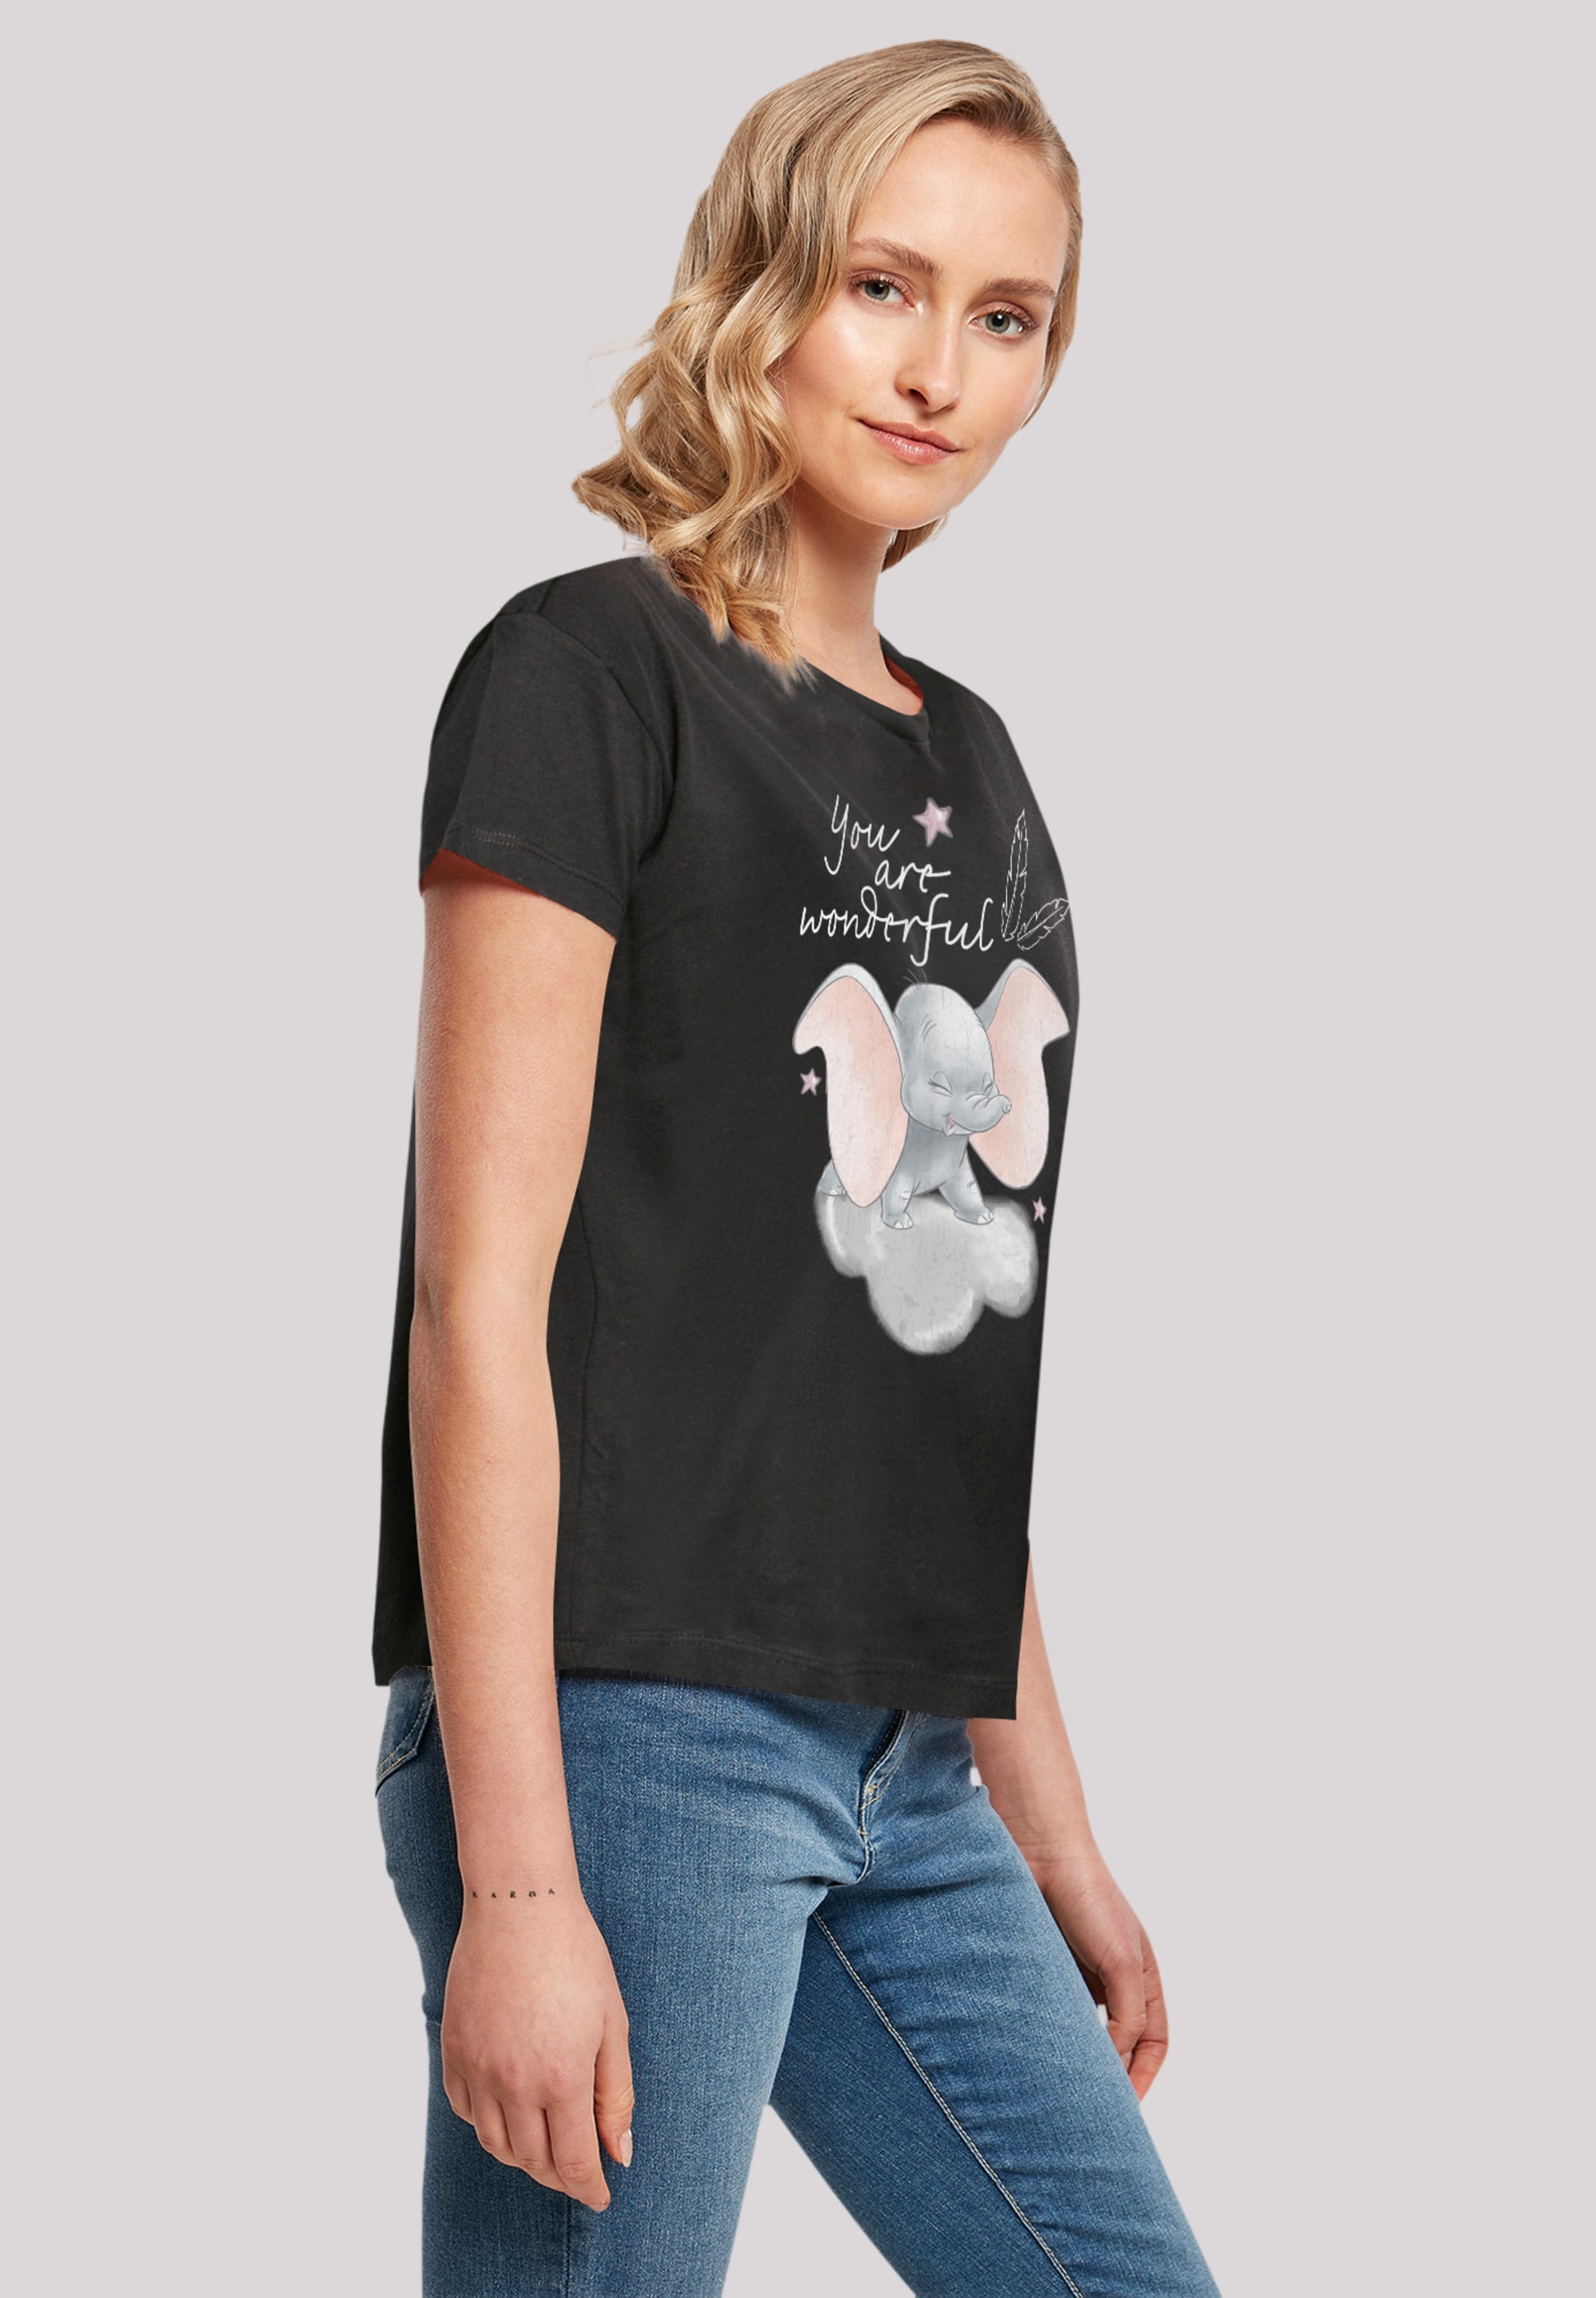 BAUR T-Shirt Qualität für You »Disney Wonderful«, | Dumbo bestellen Premium F4NT4STIC Are